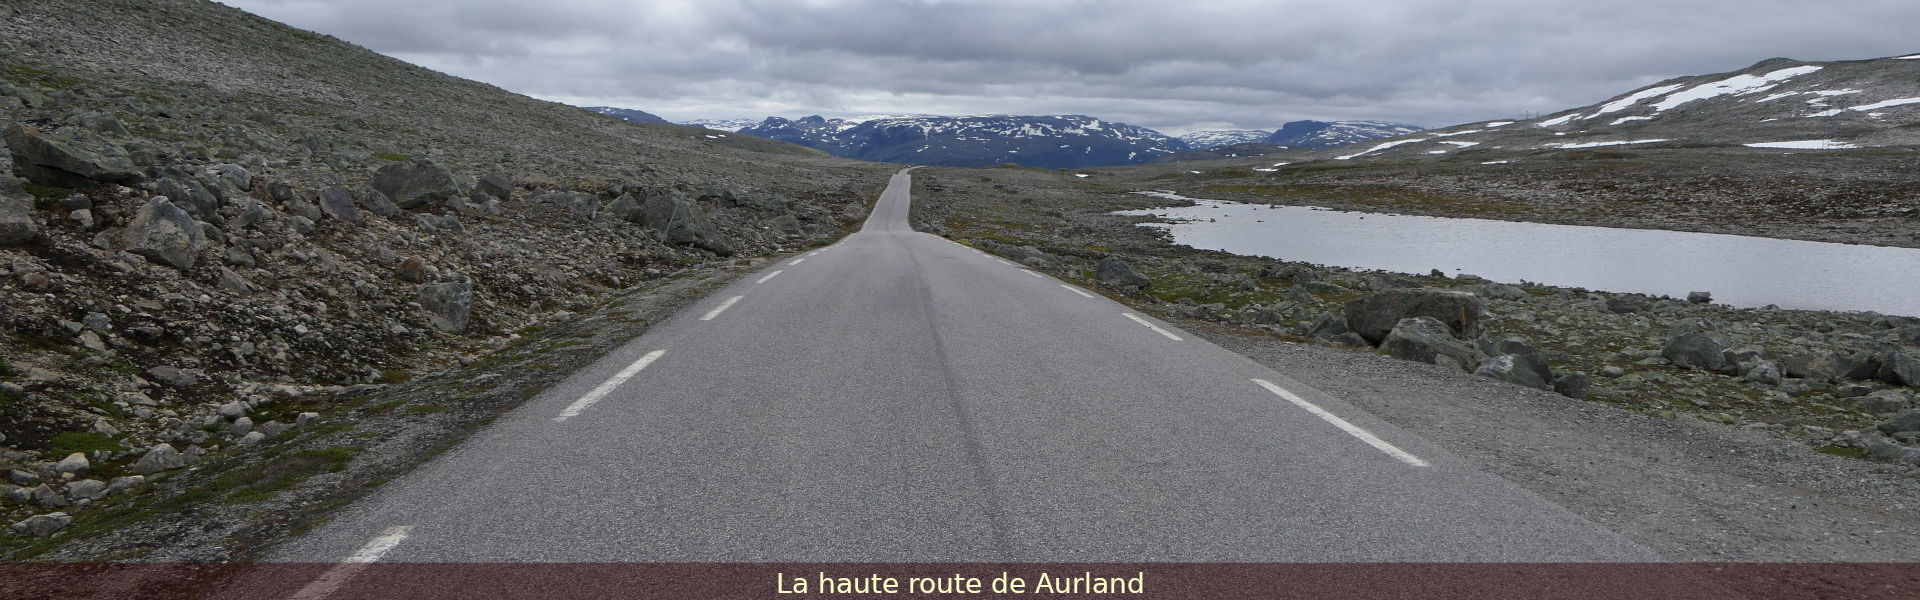 La haute route de Aurland, Norvège